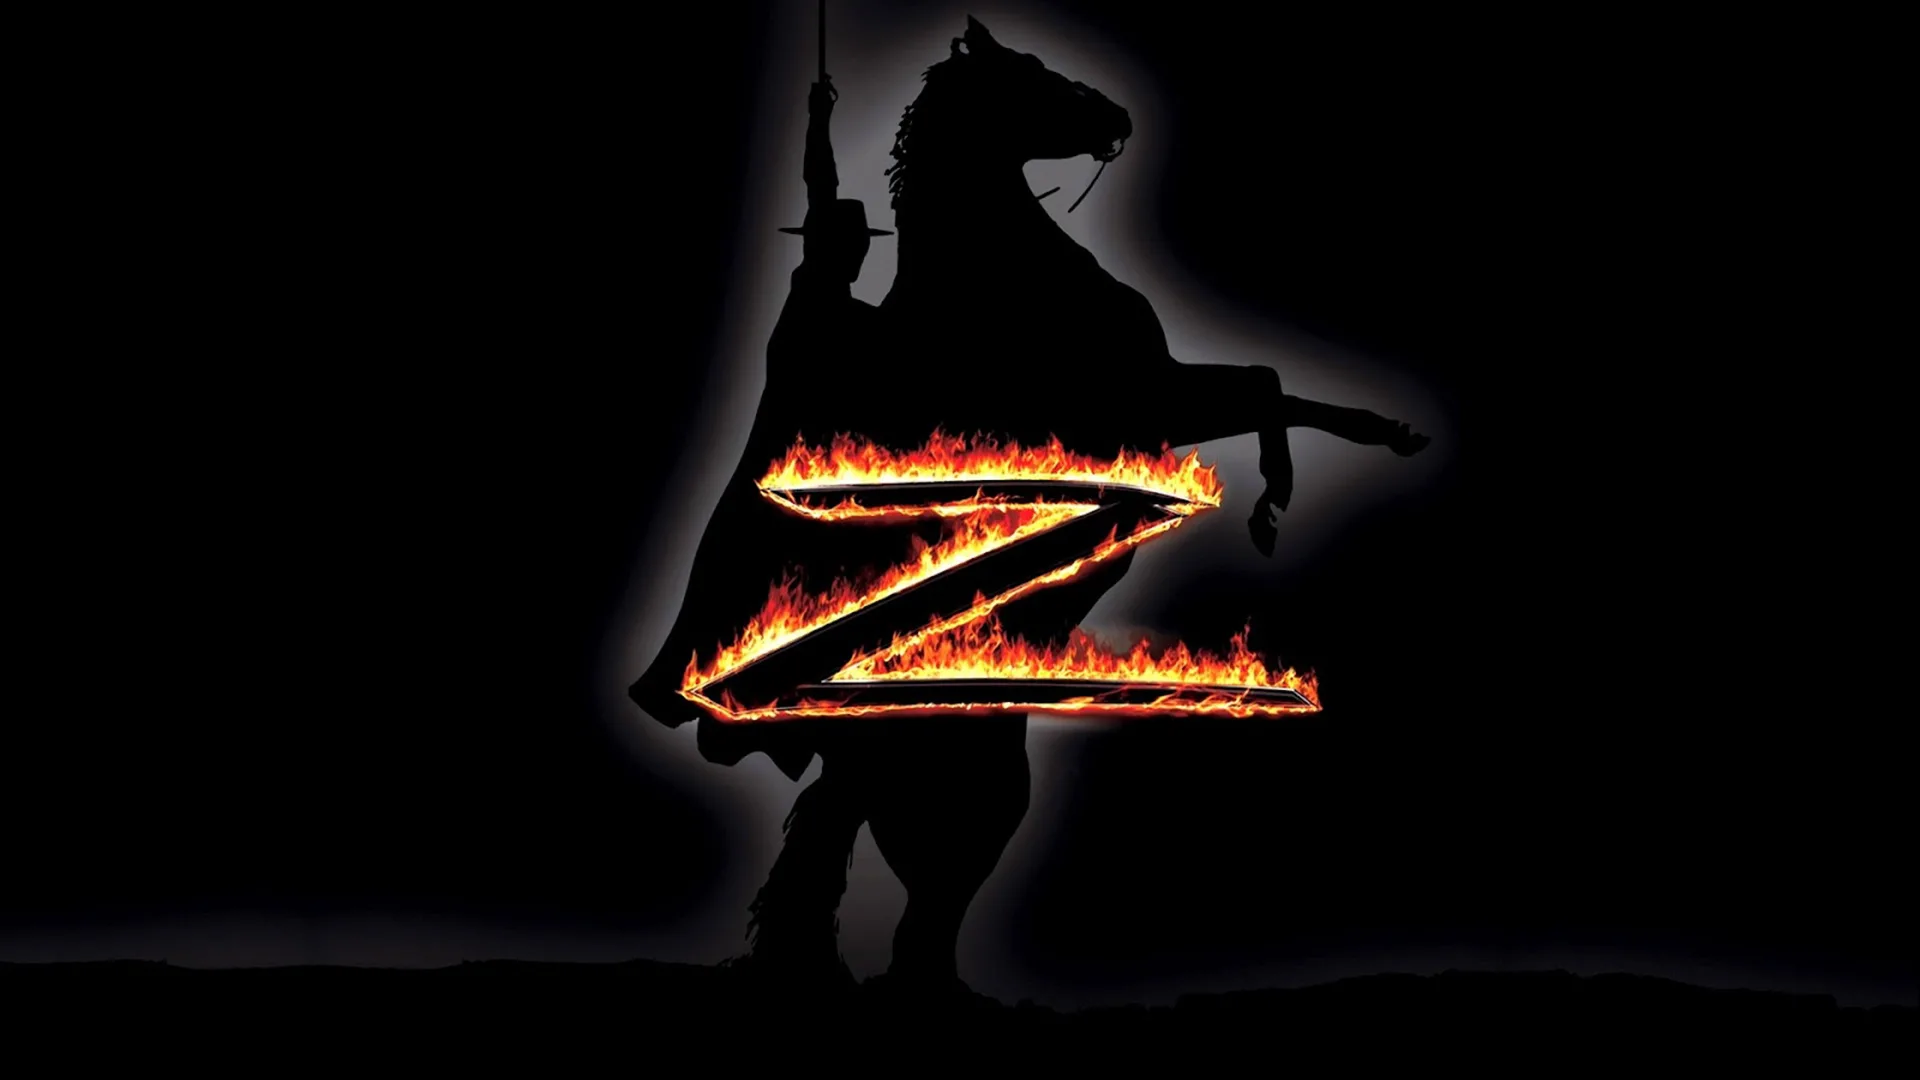 Зорро. Поколение Z 19 серия «Кузен Диего» (мультсериал, 2006)